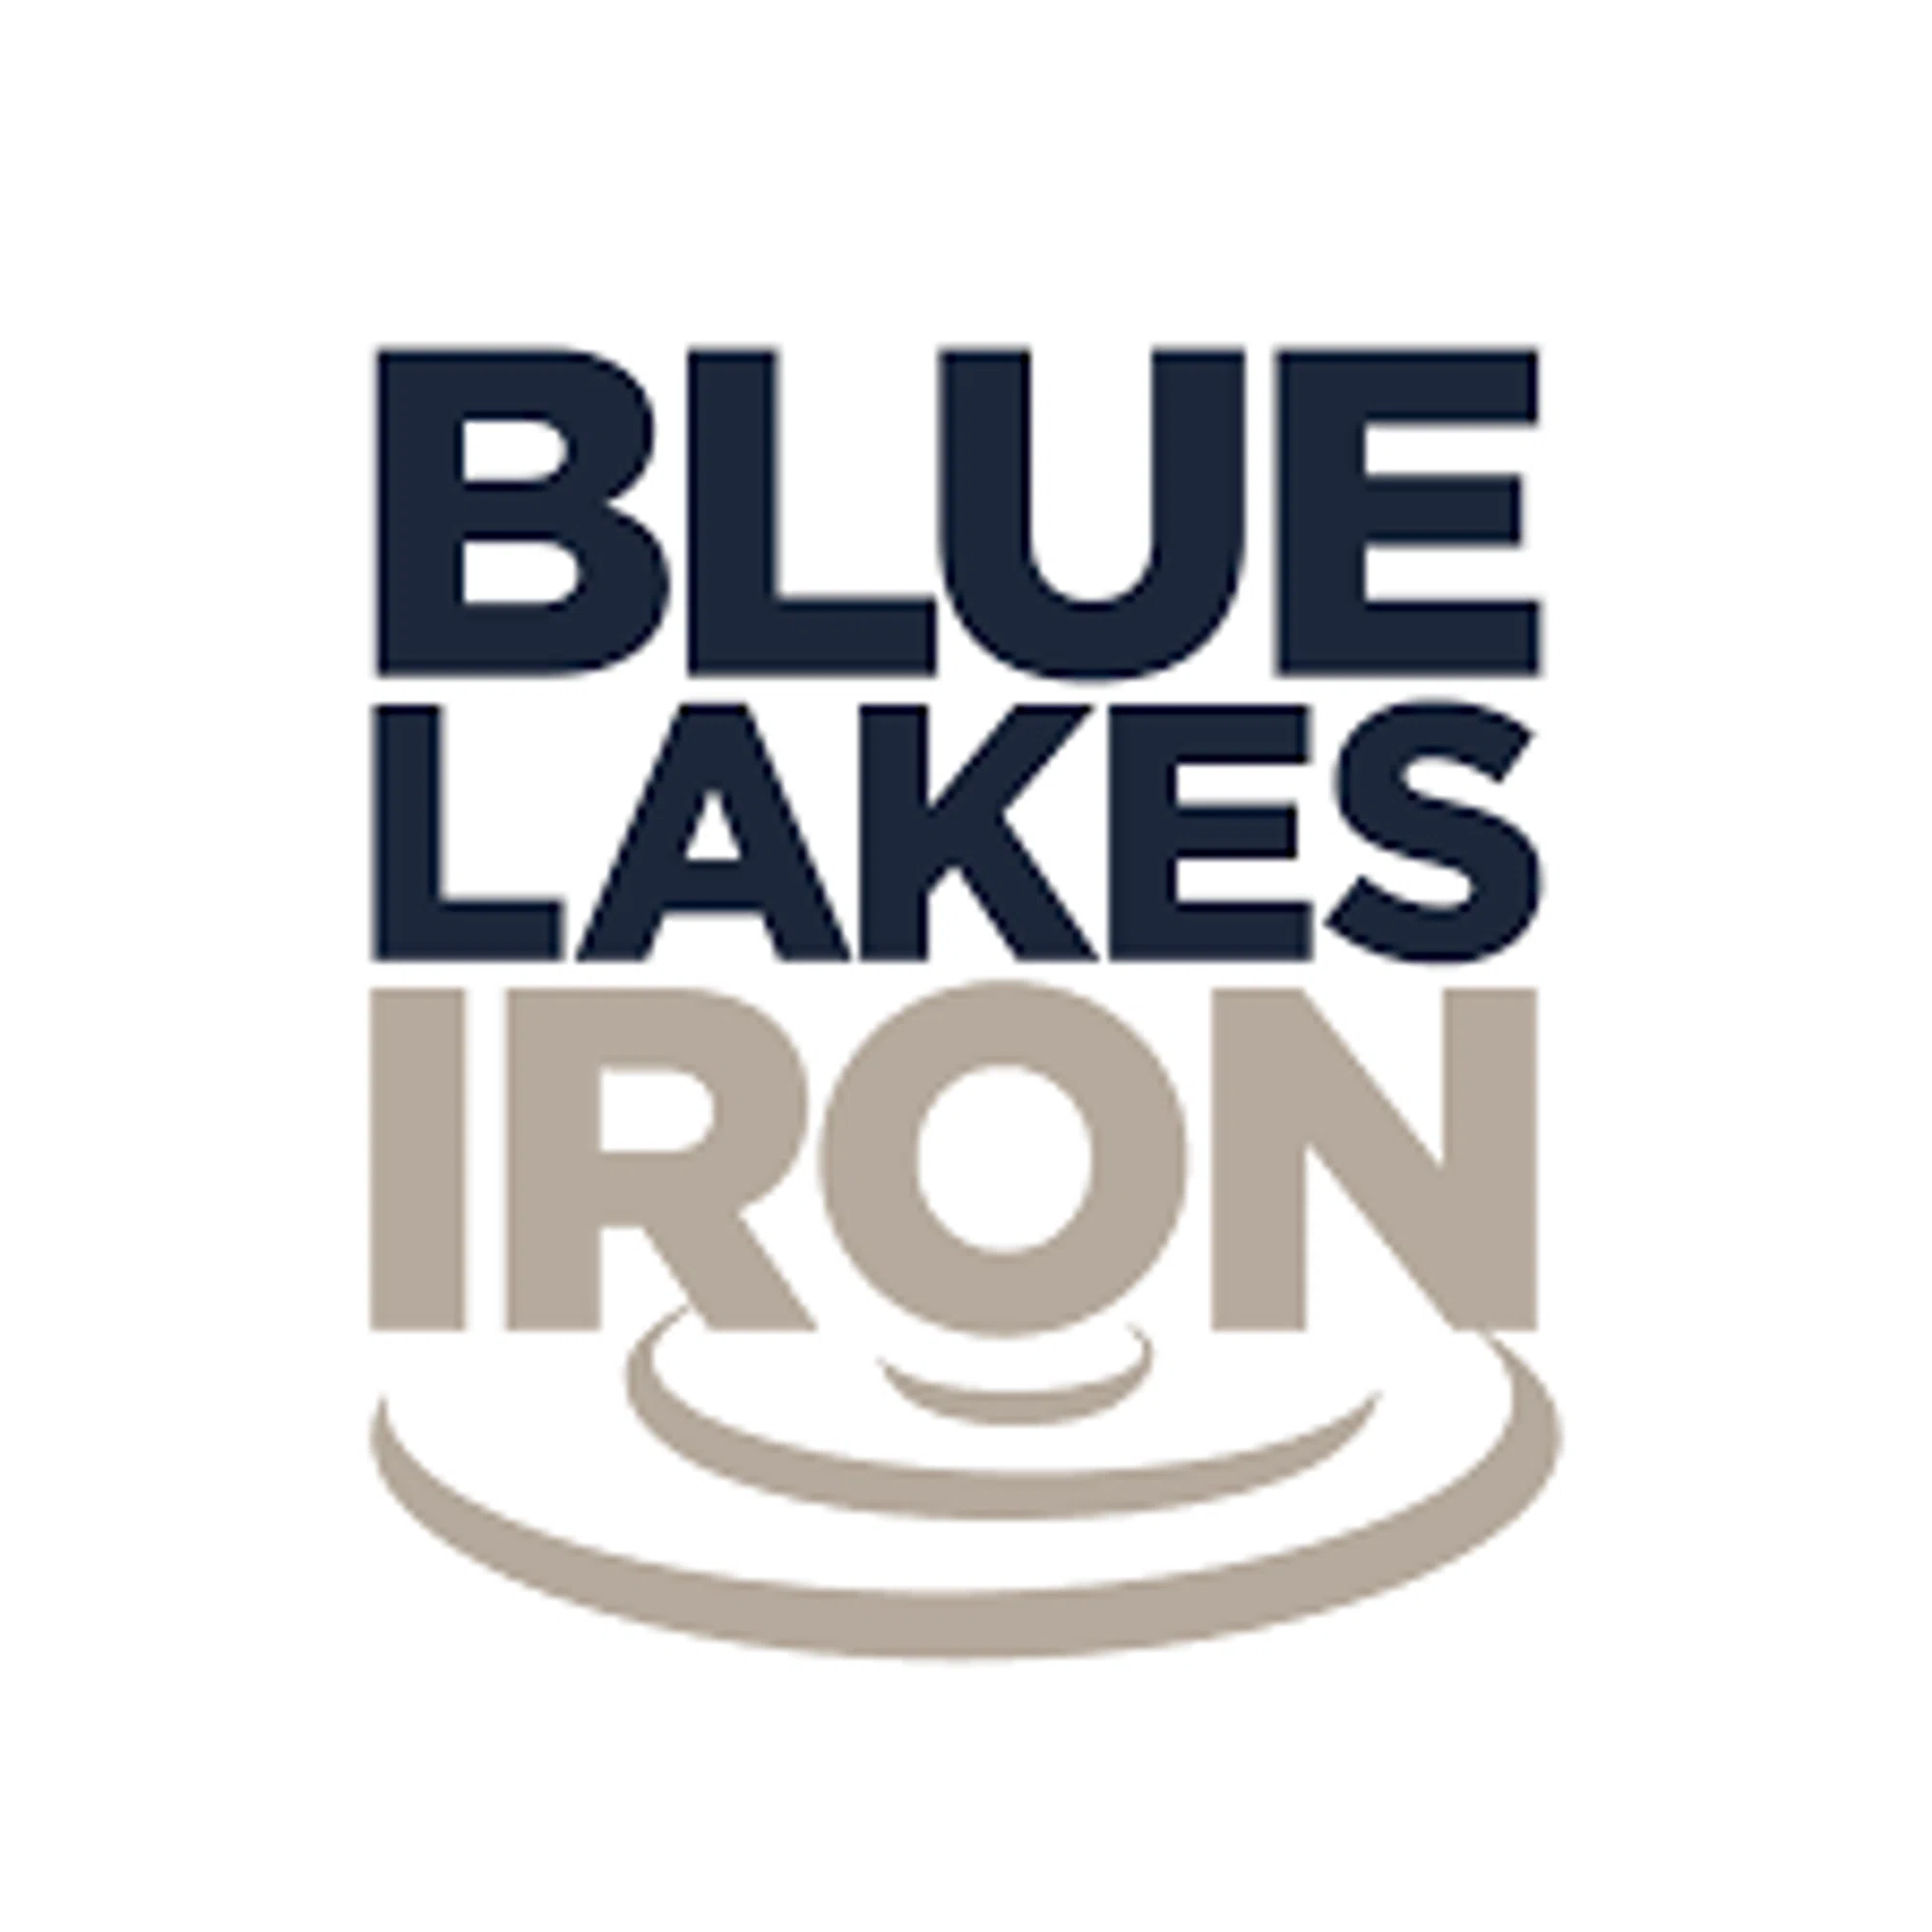 Blue Lakes Iron